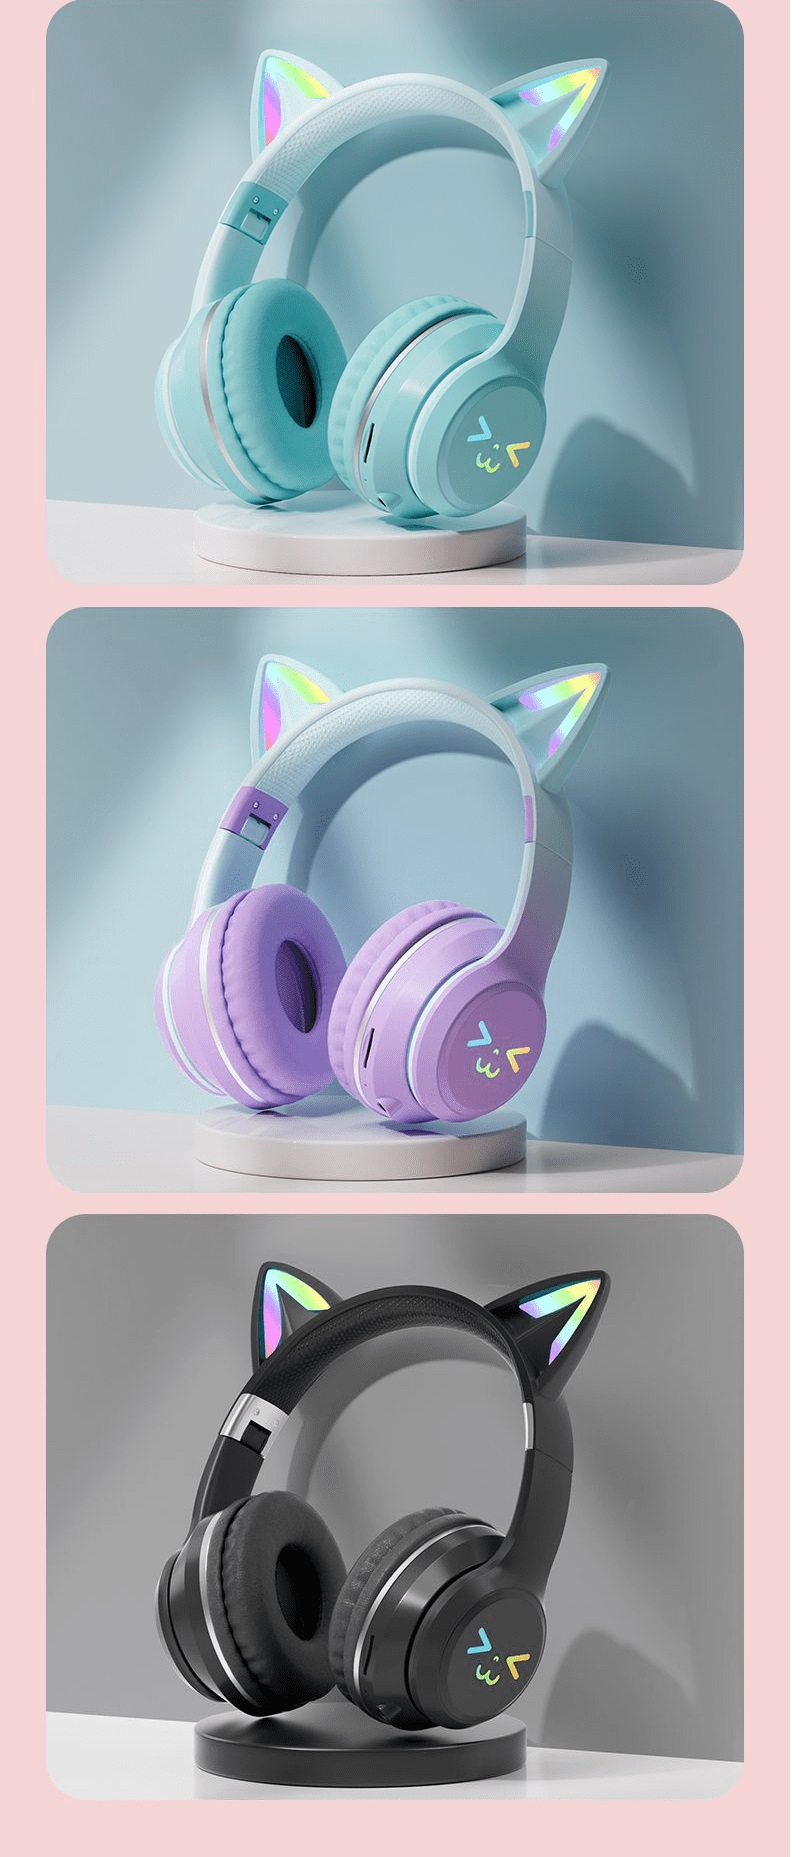 Tai nghe chụp tai BT612 kết nối bằng Bluetooth với thiết kế tai mèo dễ thương có thể gấp gọn tiện lợi kèm theo đèn led RGB - HN